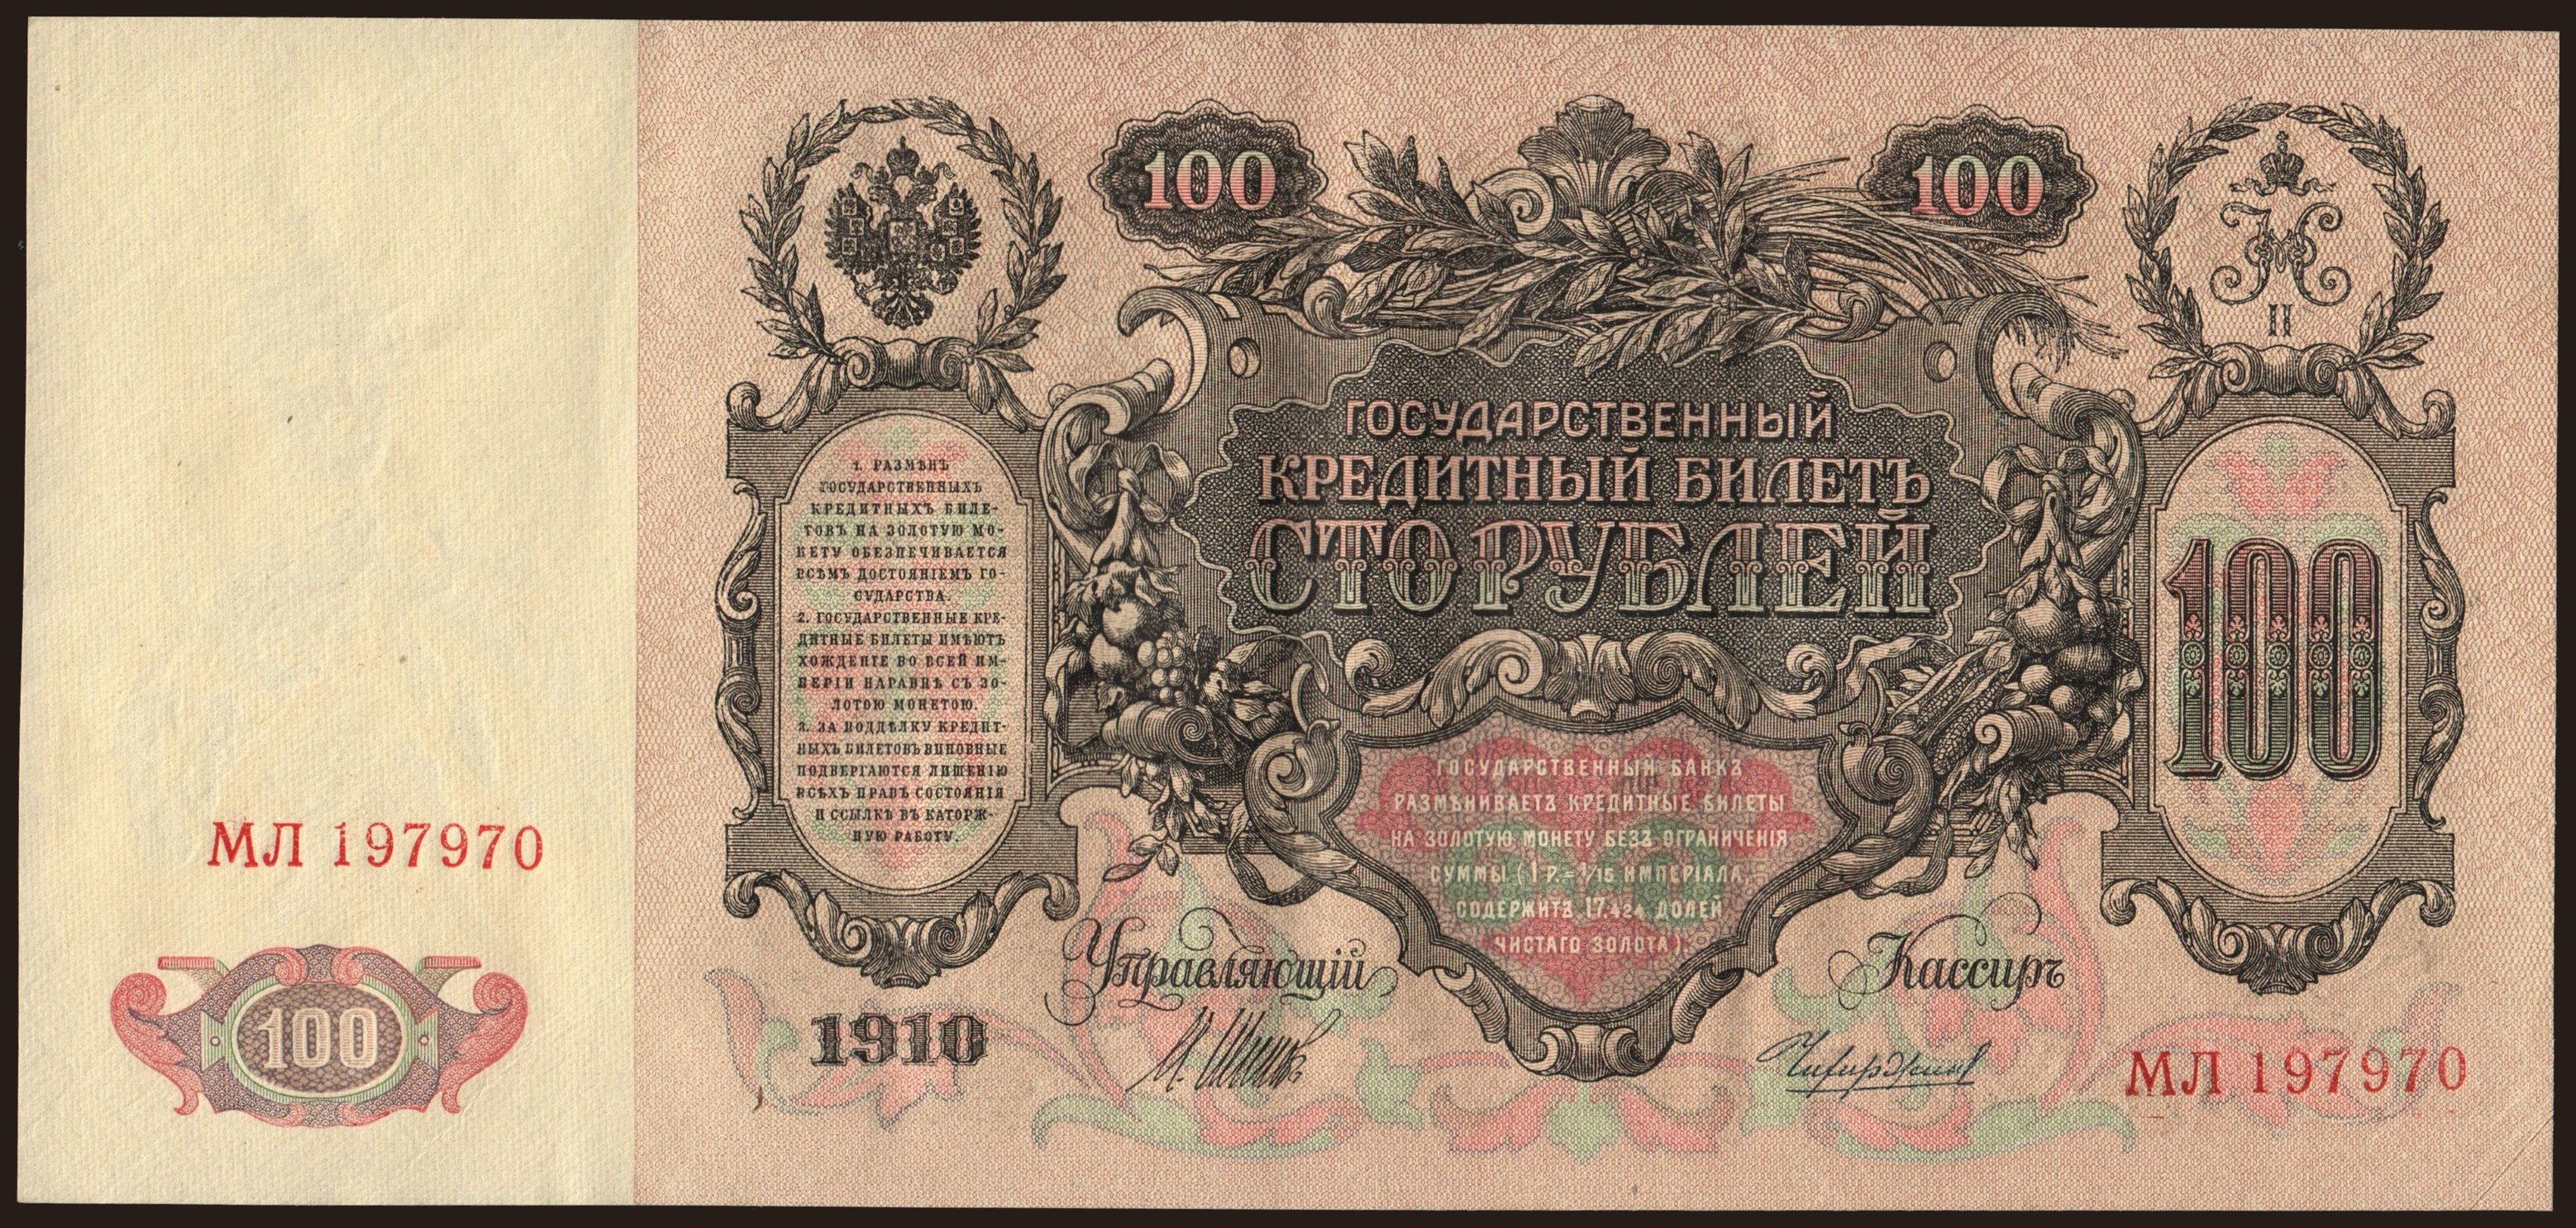 100 rubel, 1910, Shipov/ Tschichirshin